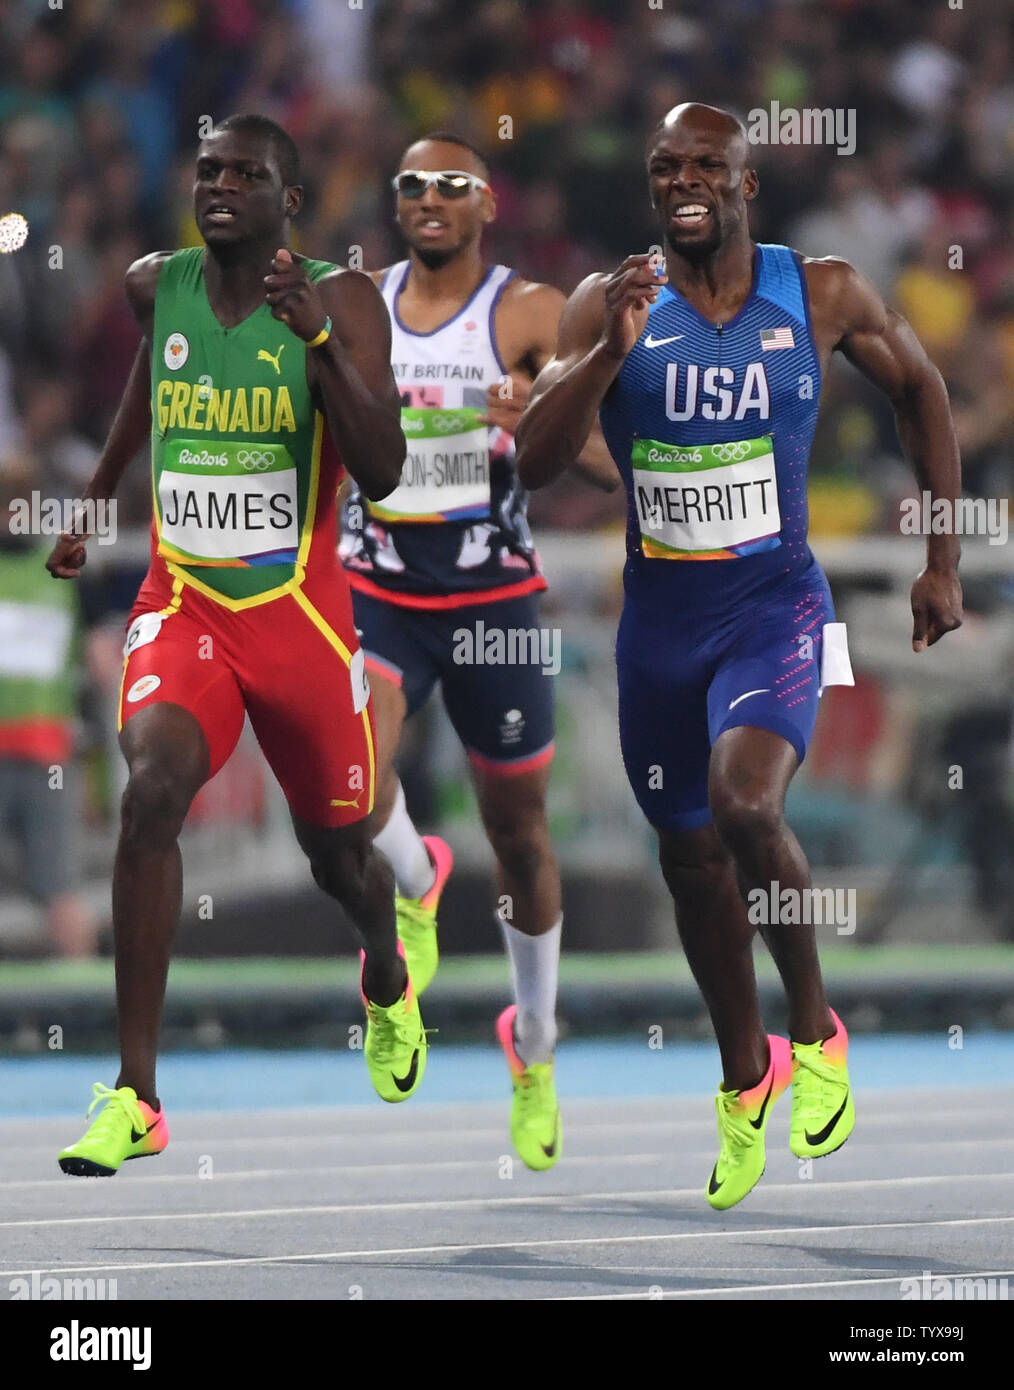 Kirani James (GRN) und Lashawn Merritt (USA) Rennen für Silber und Bronze bei den Herren 400 m-Finale im Olympiastadion am Rio olympische Sommerspiele 2016 in Rio de Janeiro, Brasilien, am 13. August 2016. Foto von Terry Schmitt/UPI Stockfoto